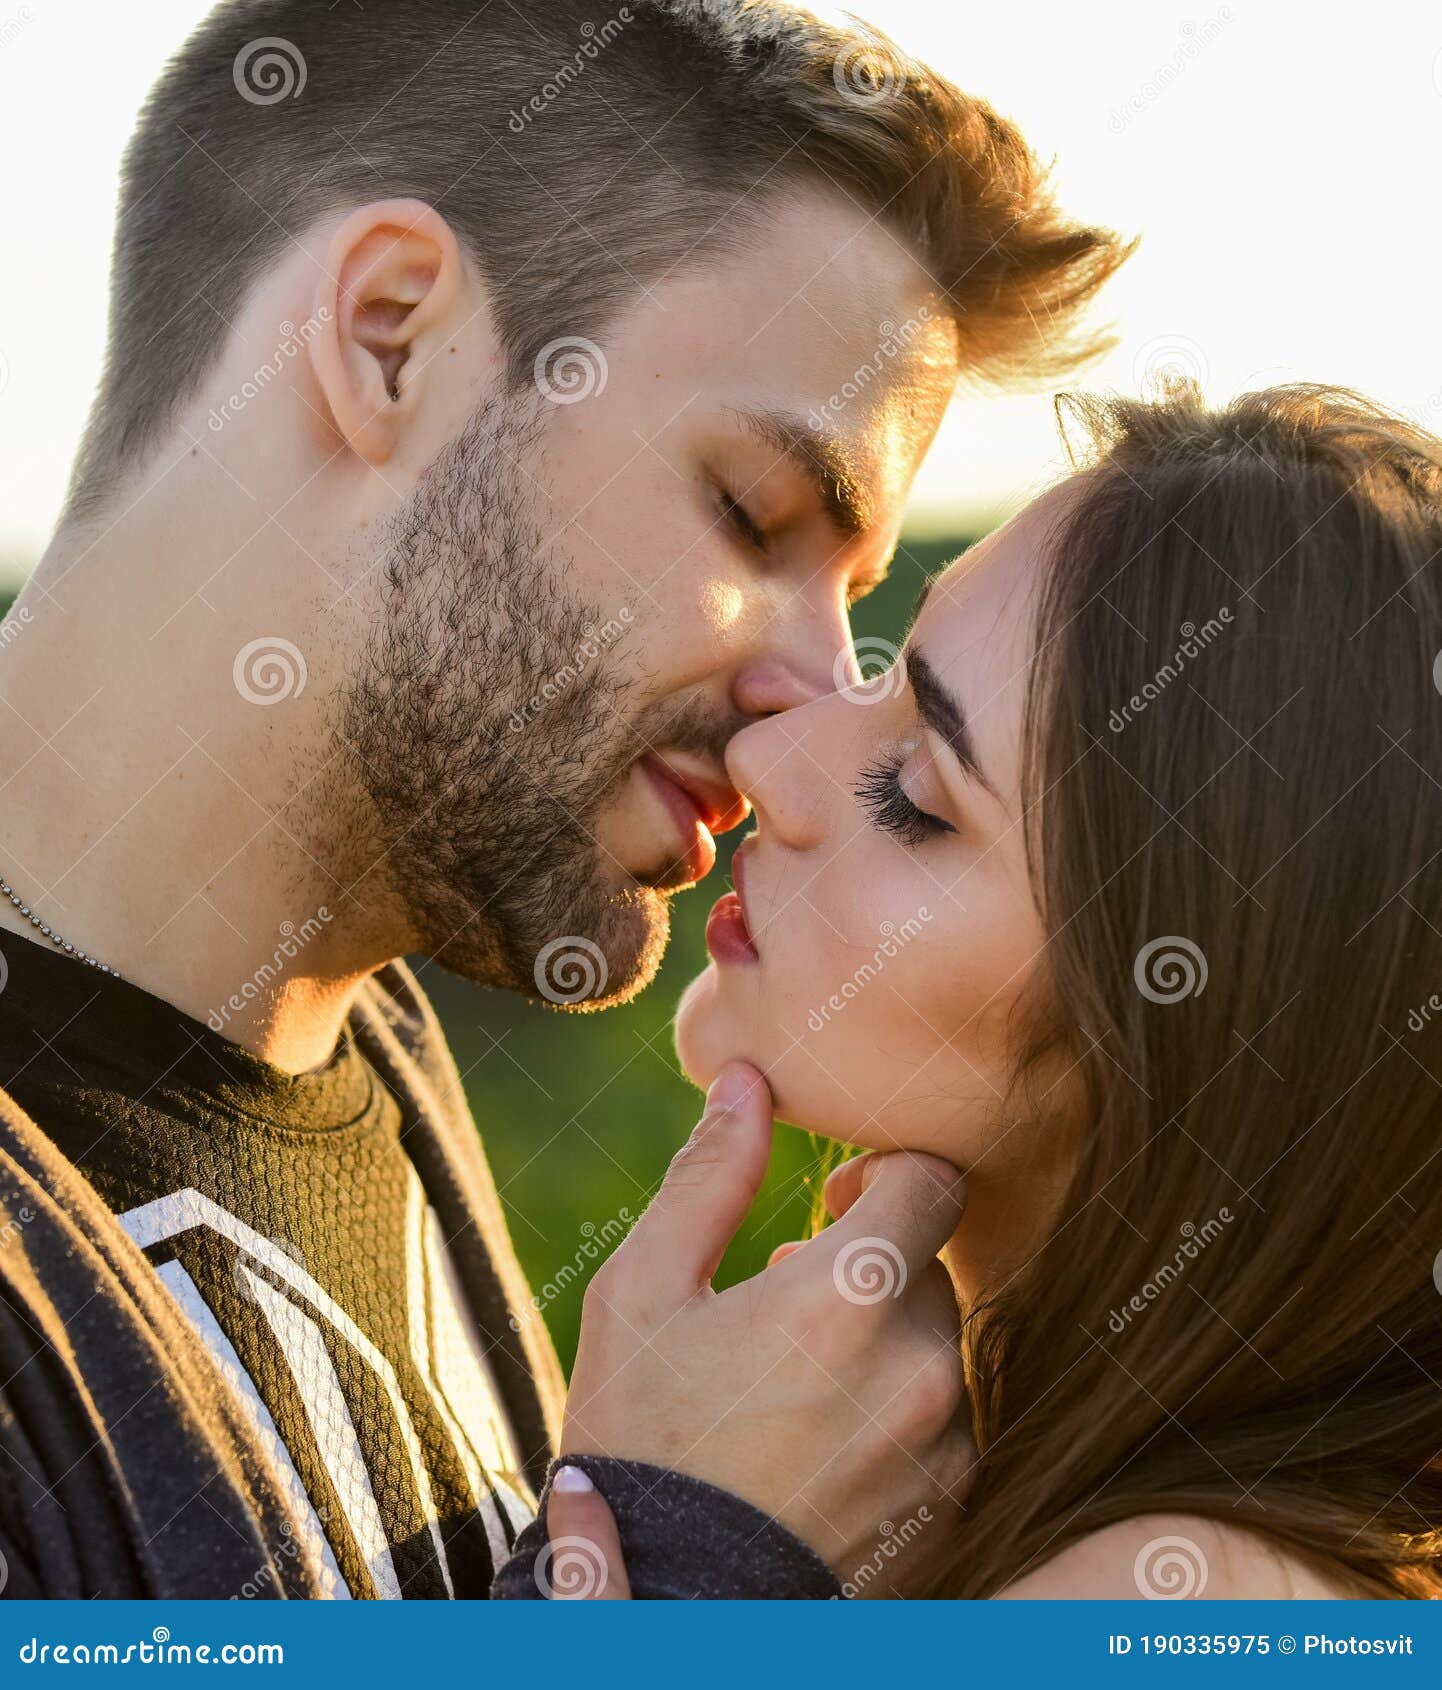 Girl Hot Kissing